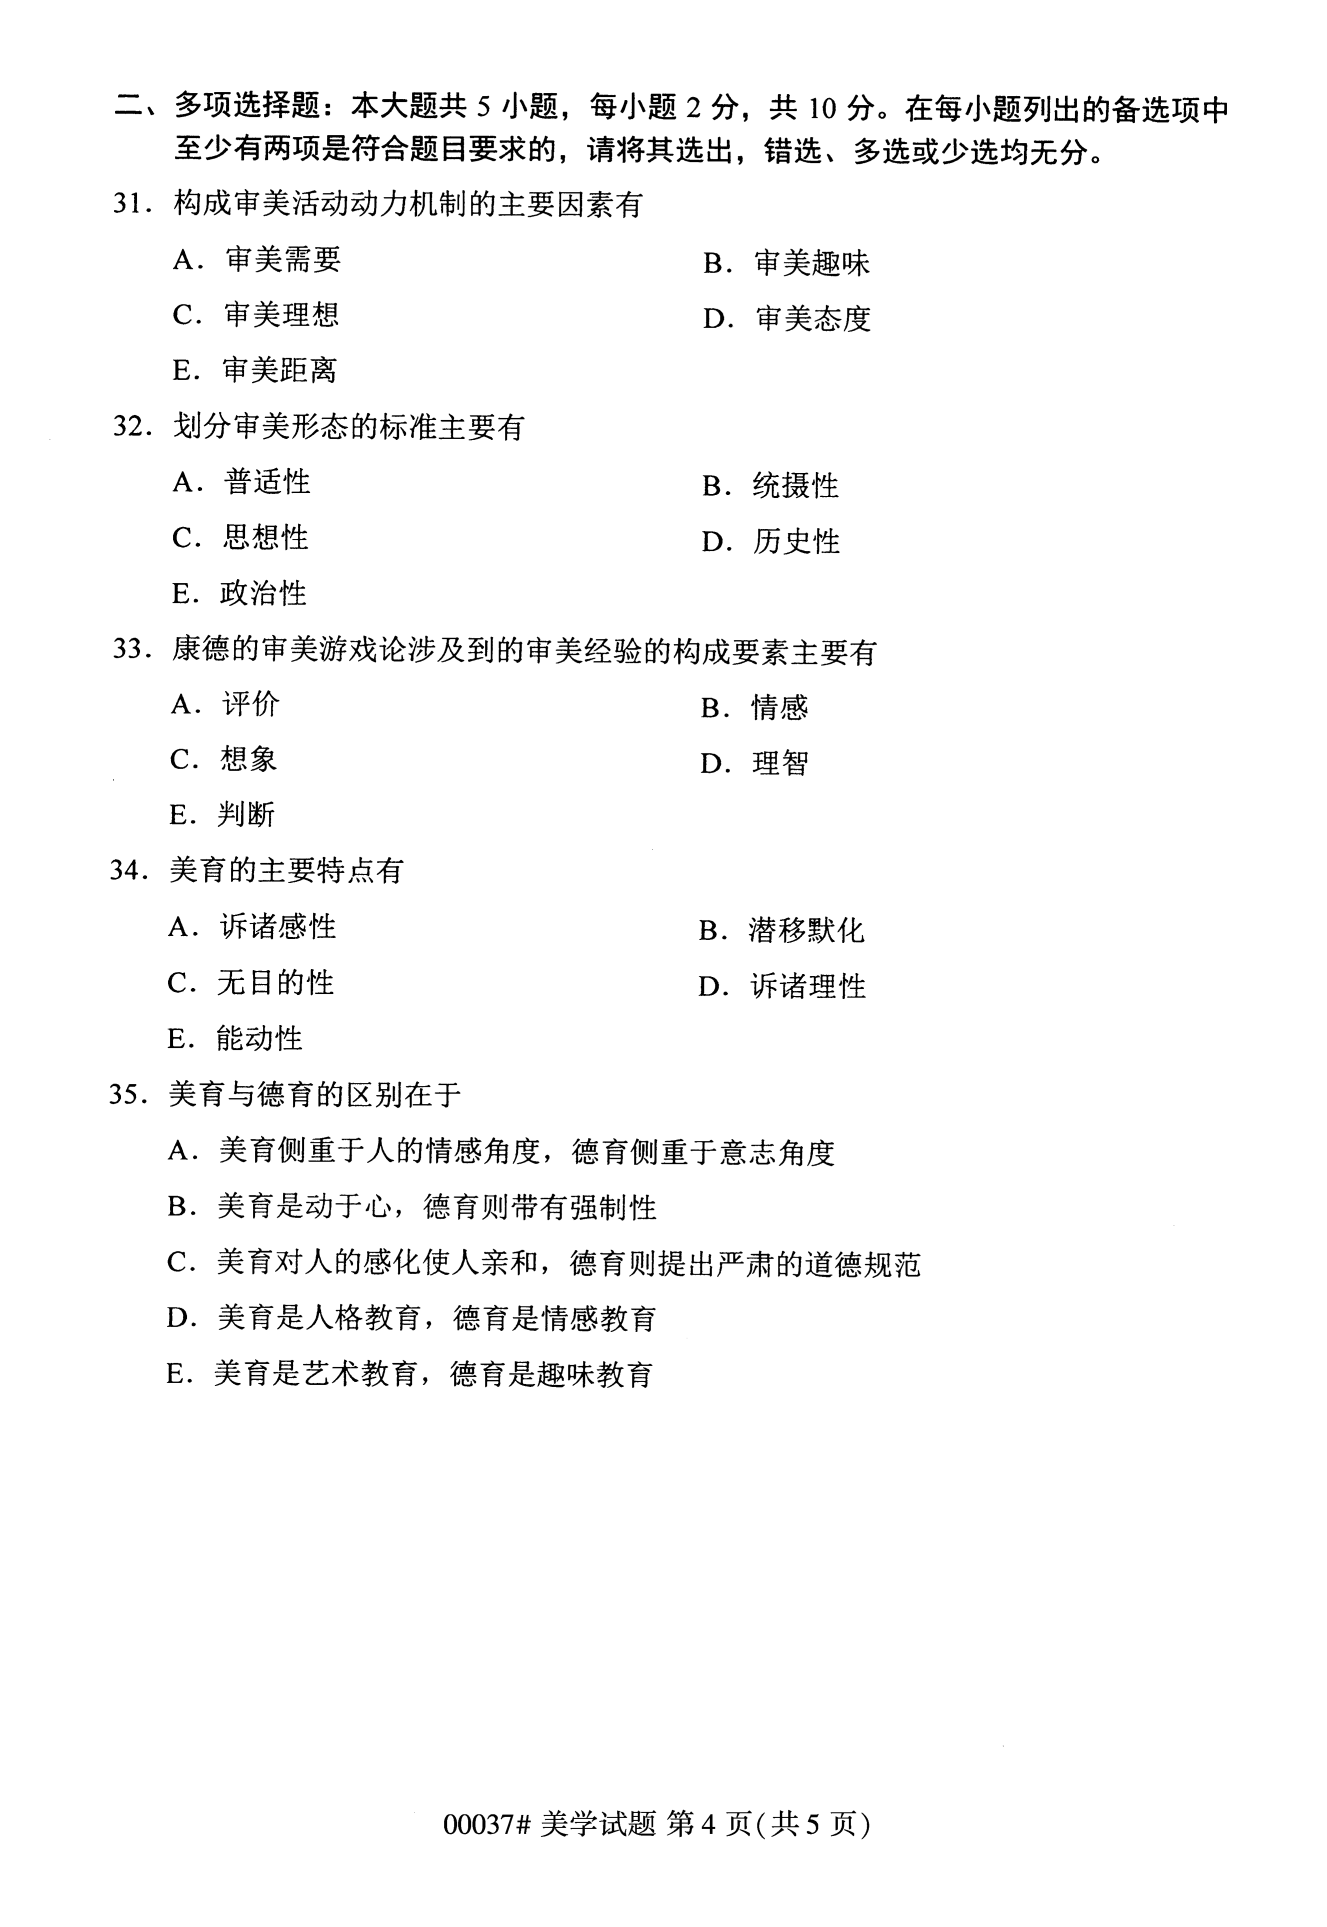 2022年10月全国统考课程云南自考美学试卷